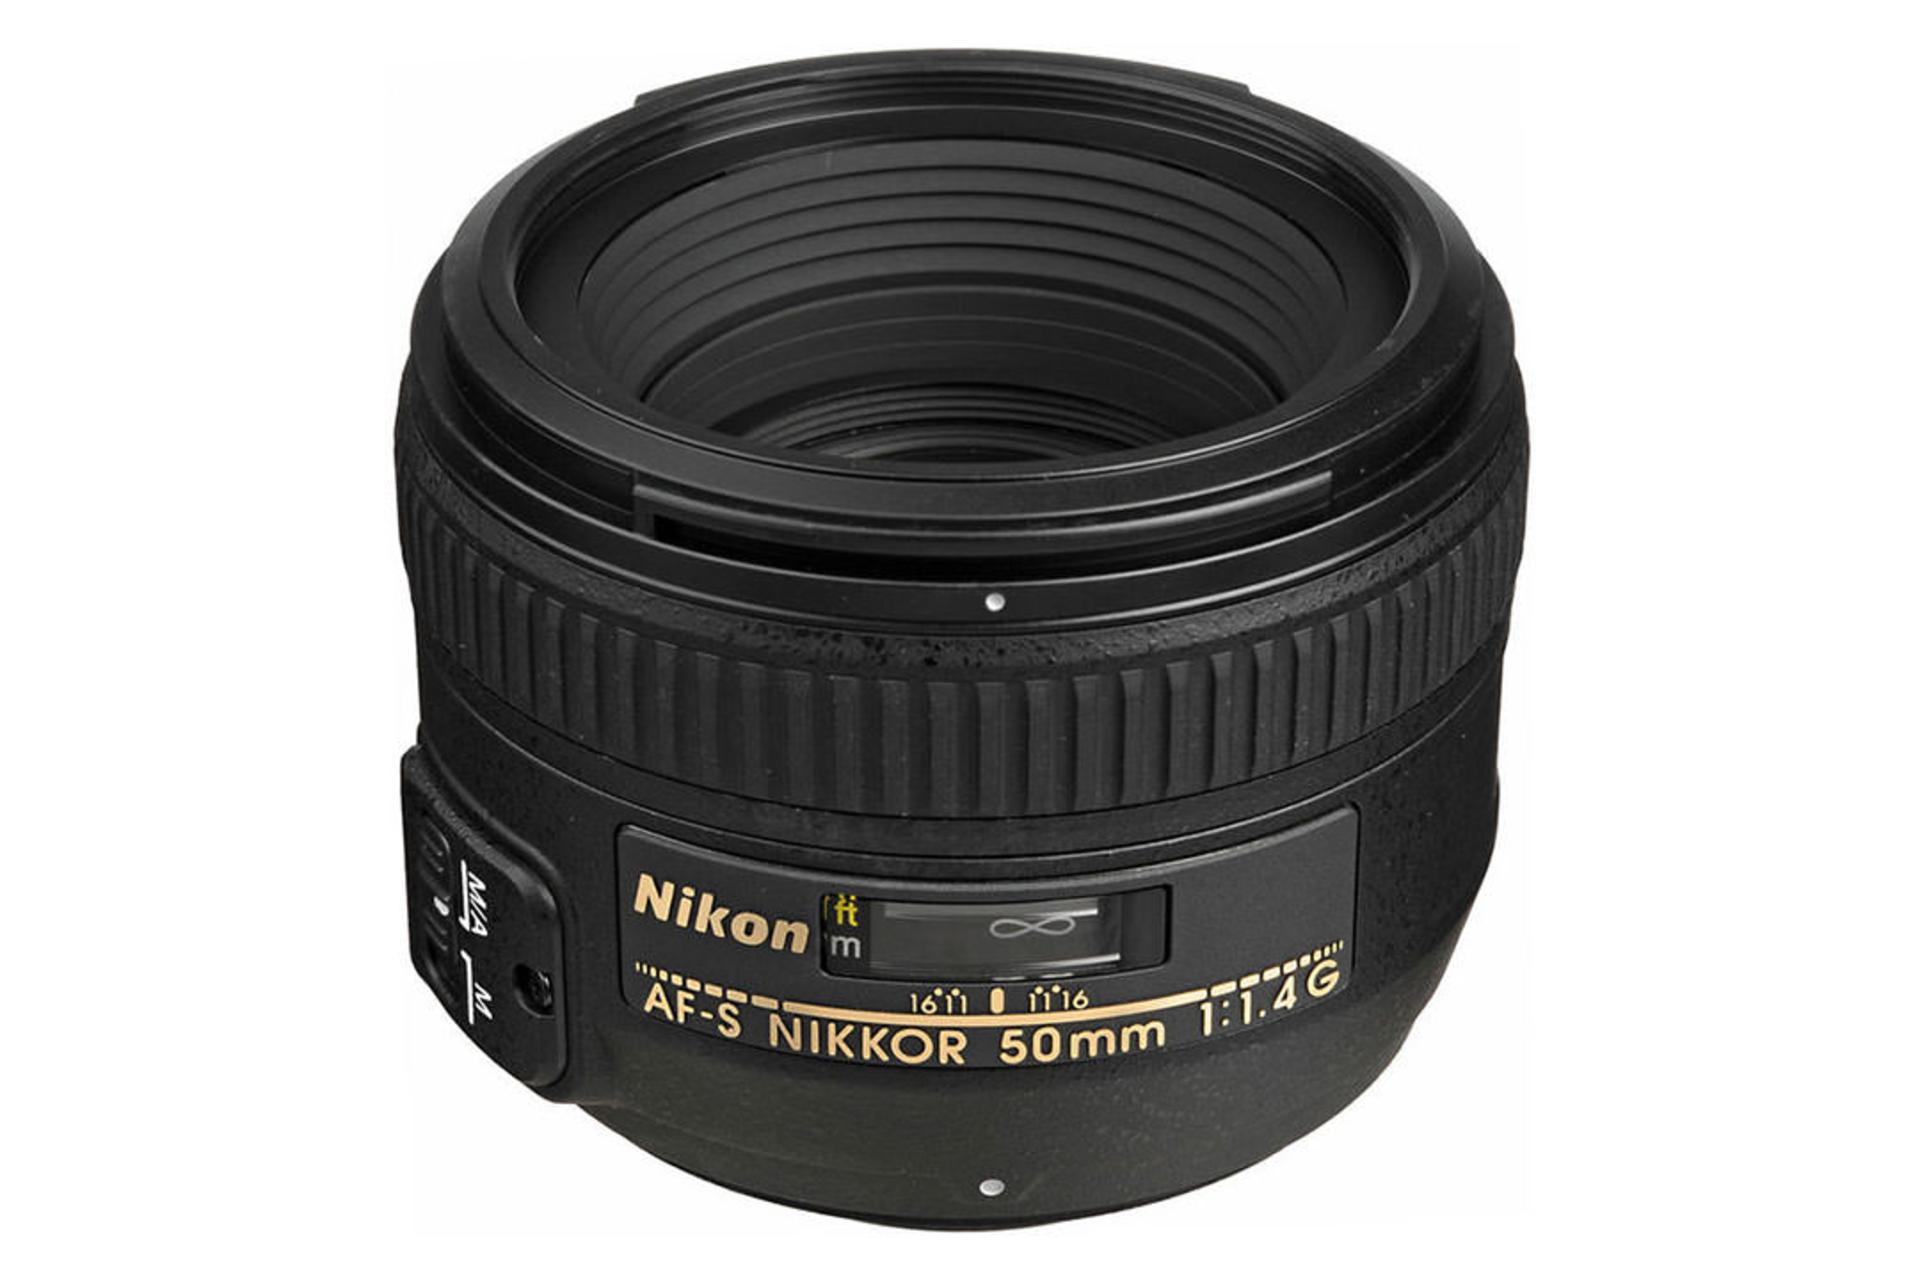 Nikon AF-S Nikkor 50mm f/1.4G	